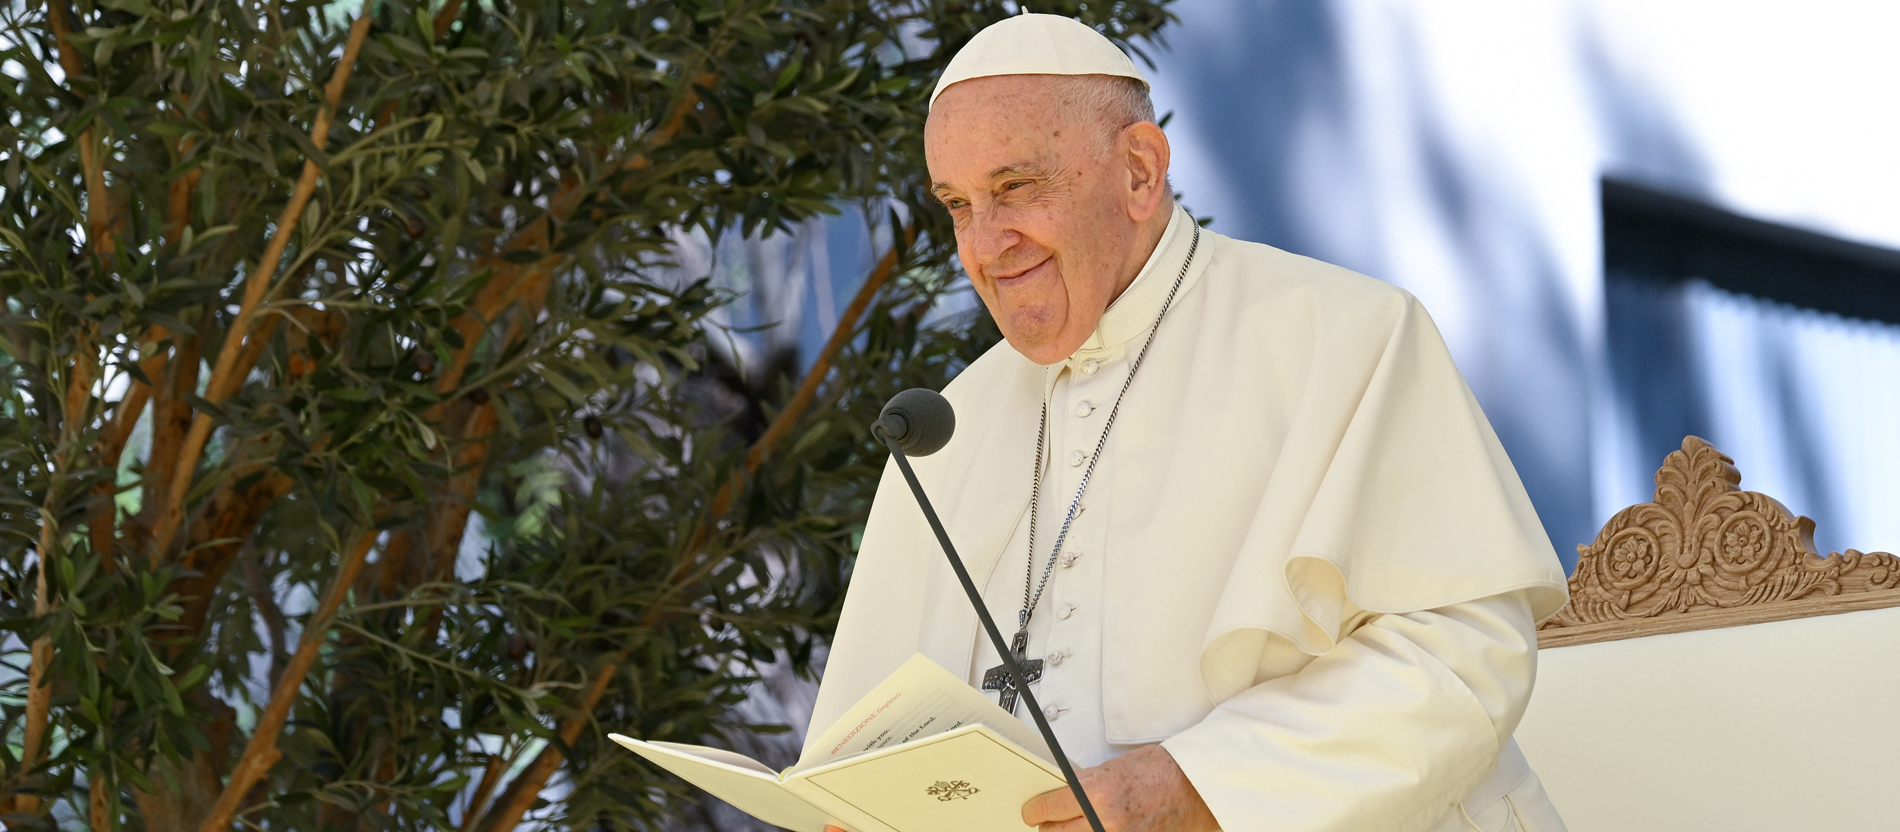 ‘Laudato si’ reloaded: Papa Franjo piše drugi dio svoje ekološke enciklike